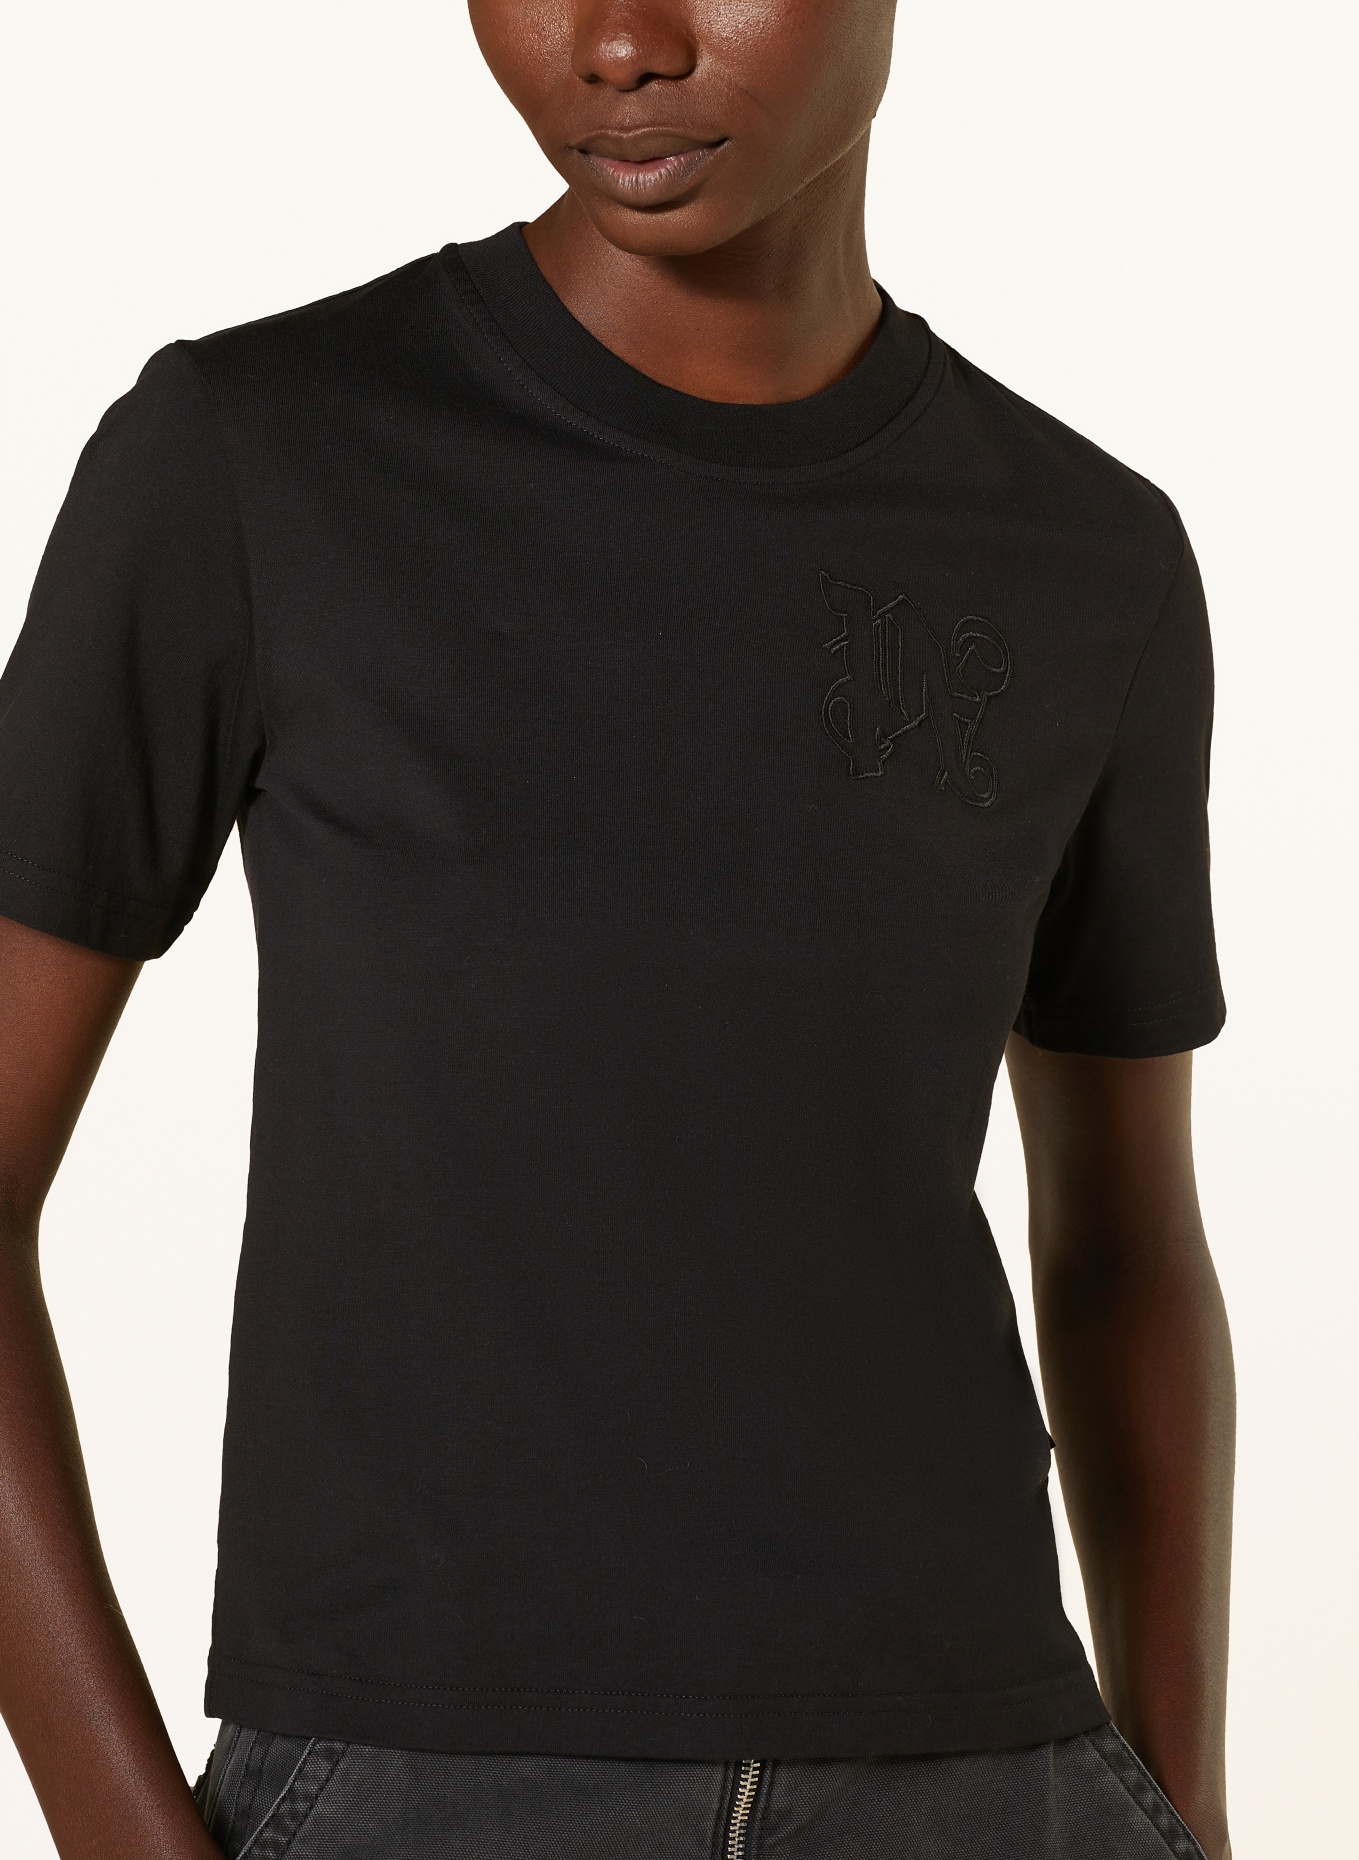 Palm Angels T-shirt, Color: BLACK (Image 4)